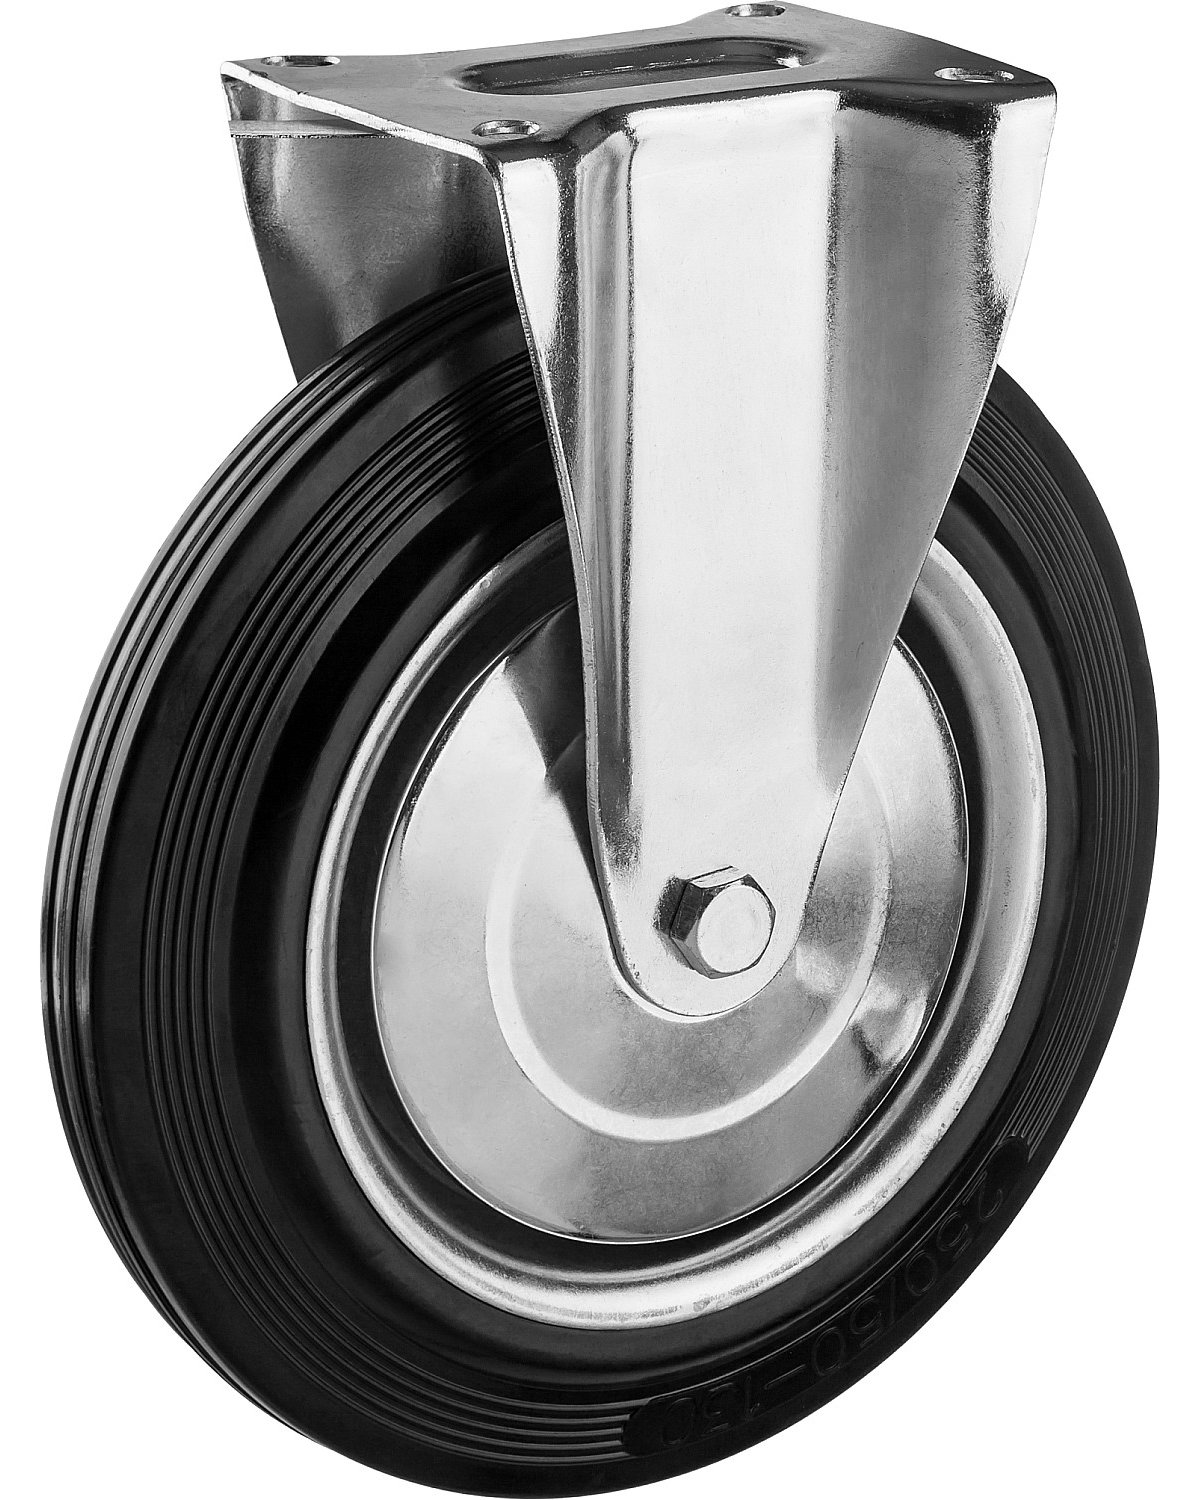 Неповоротное колесо резина металл игольчатый подшипник ЗУБР Профессионал d 250 мм г п 210 кг (30936-250-F)